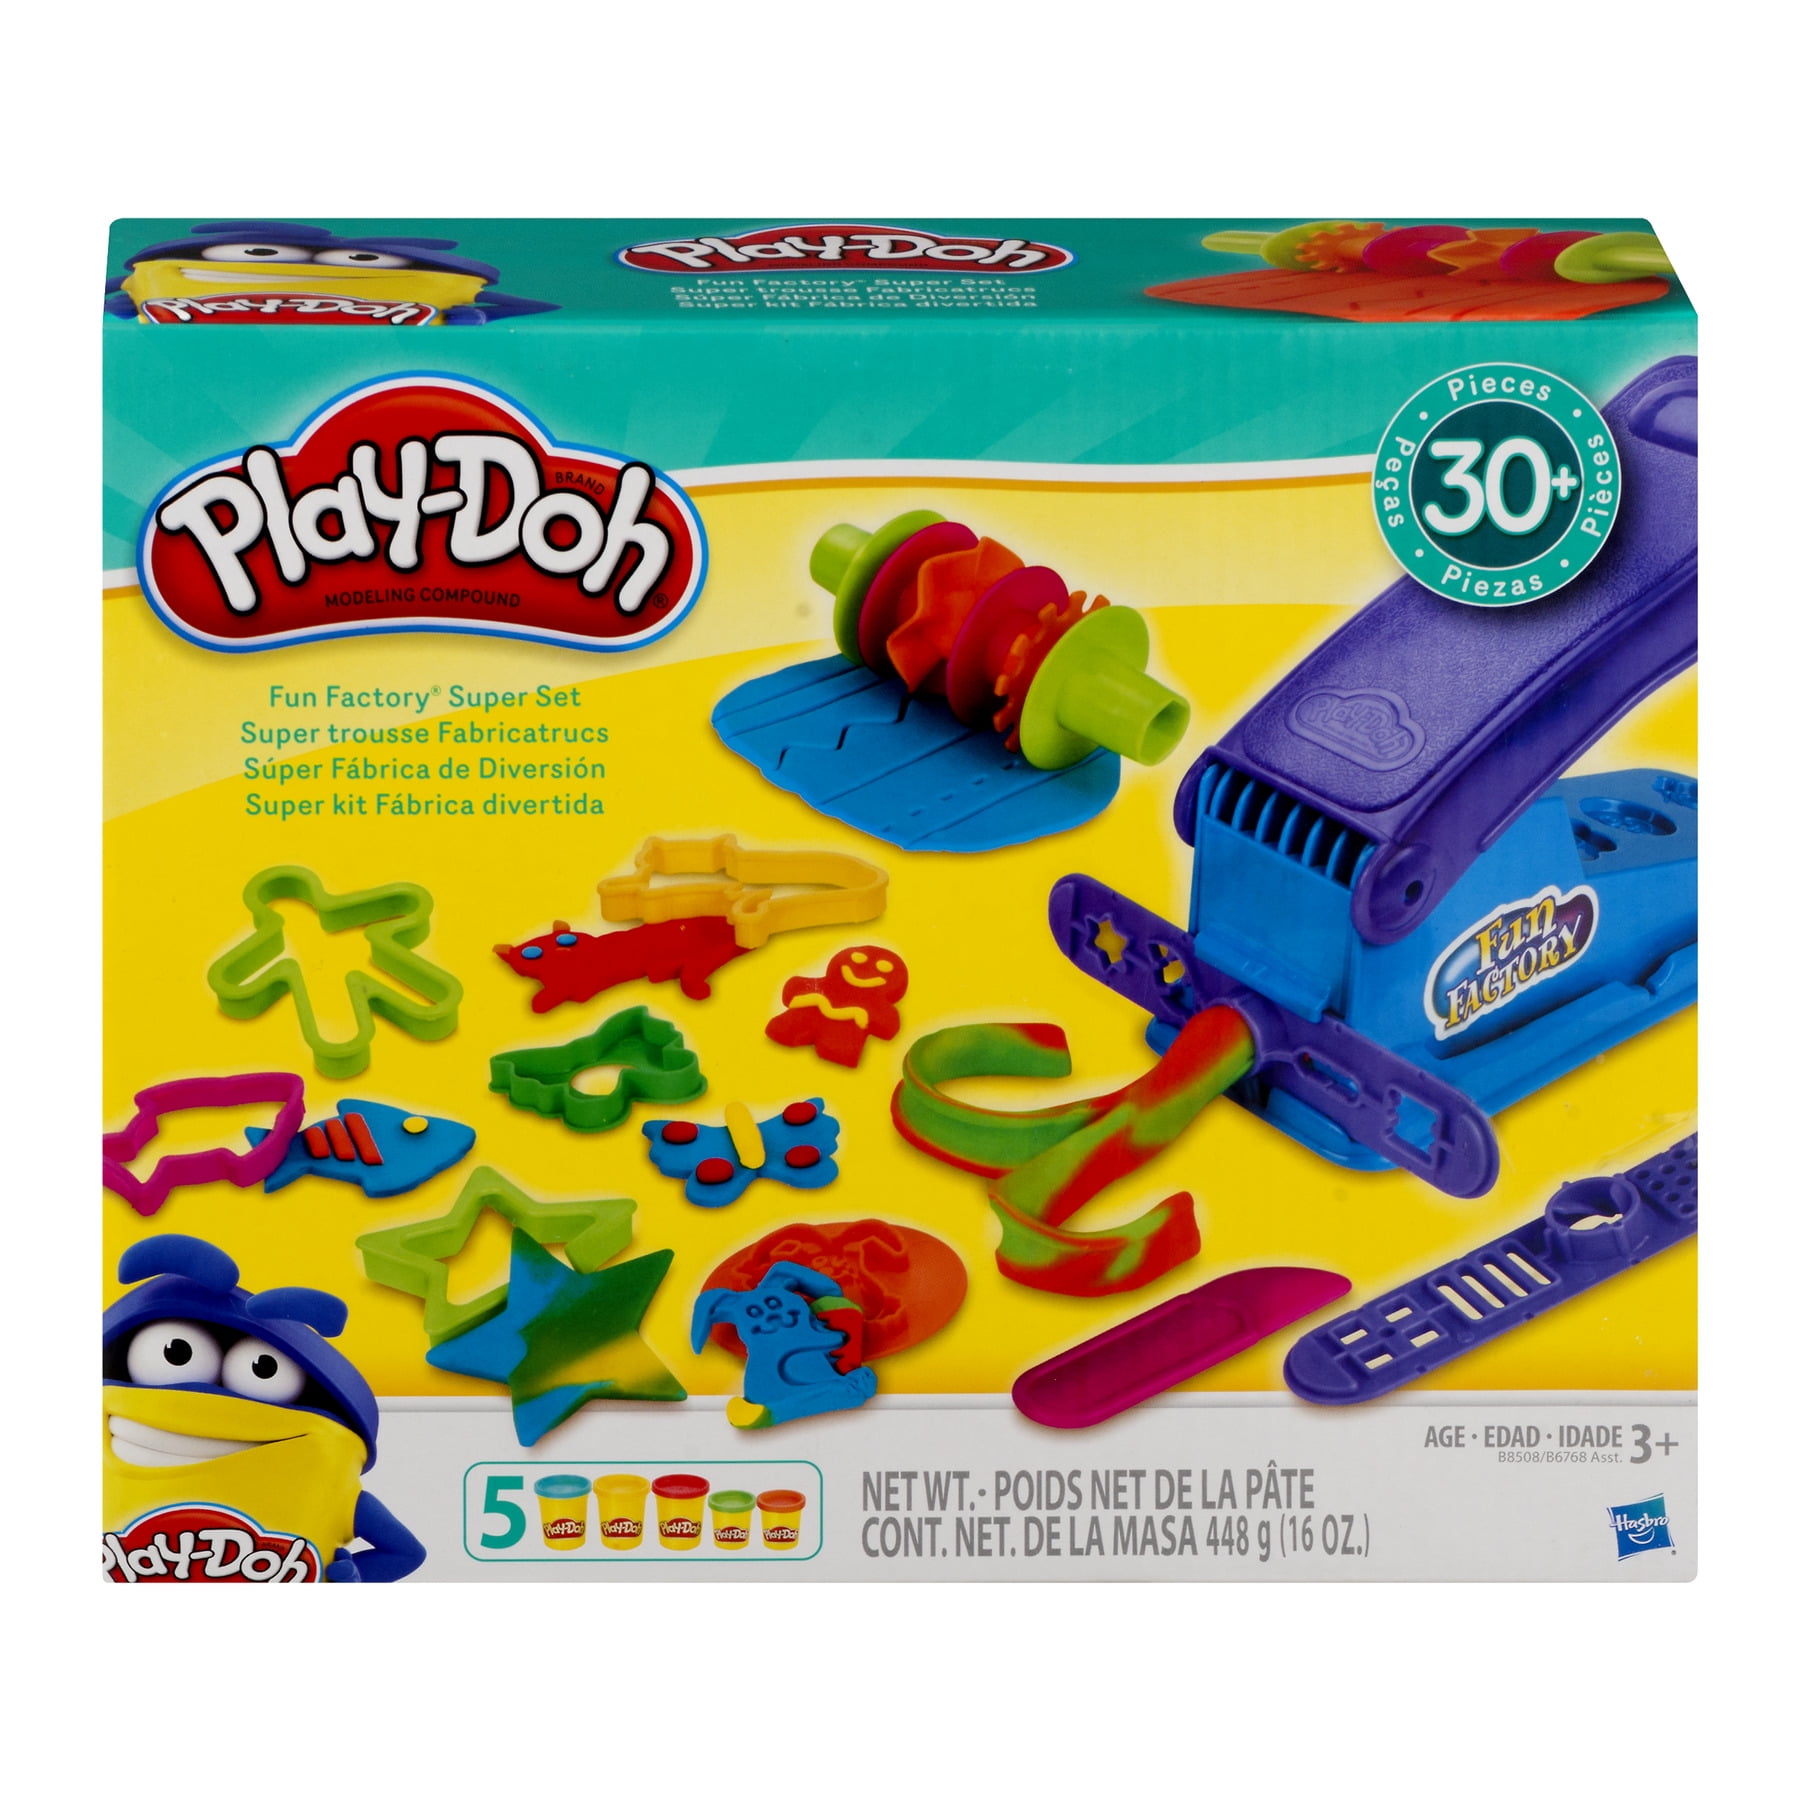 Play-Doh Fun Factory Deluxe Set  über 30-teile mit Knetpresse und Schablonen 